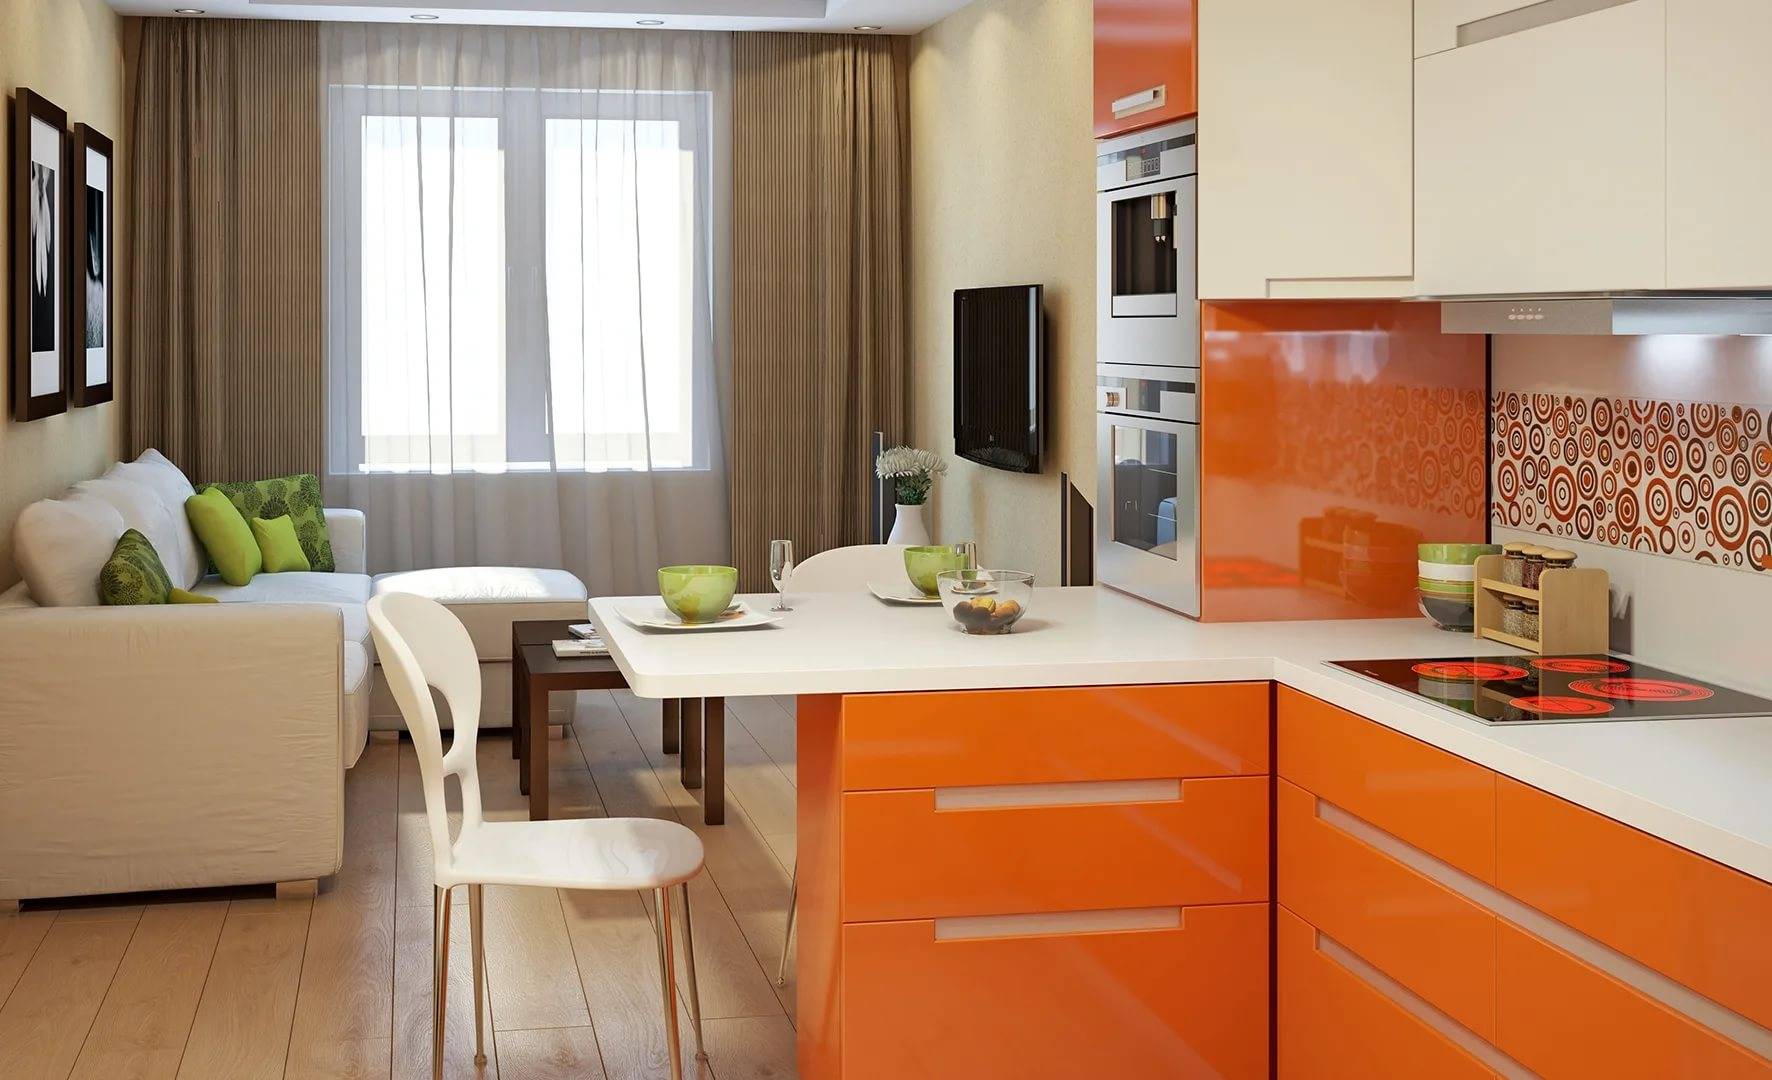 Дизайн кухни-гостиной площадью 18 кв. м: как удобно организовать многофункциональное пространство